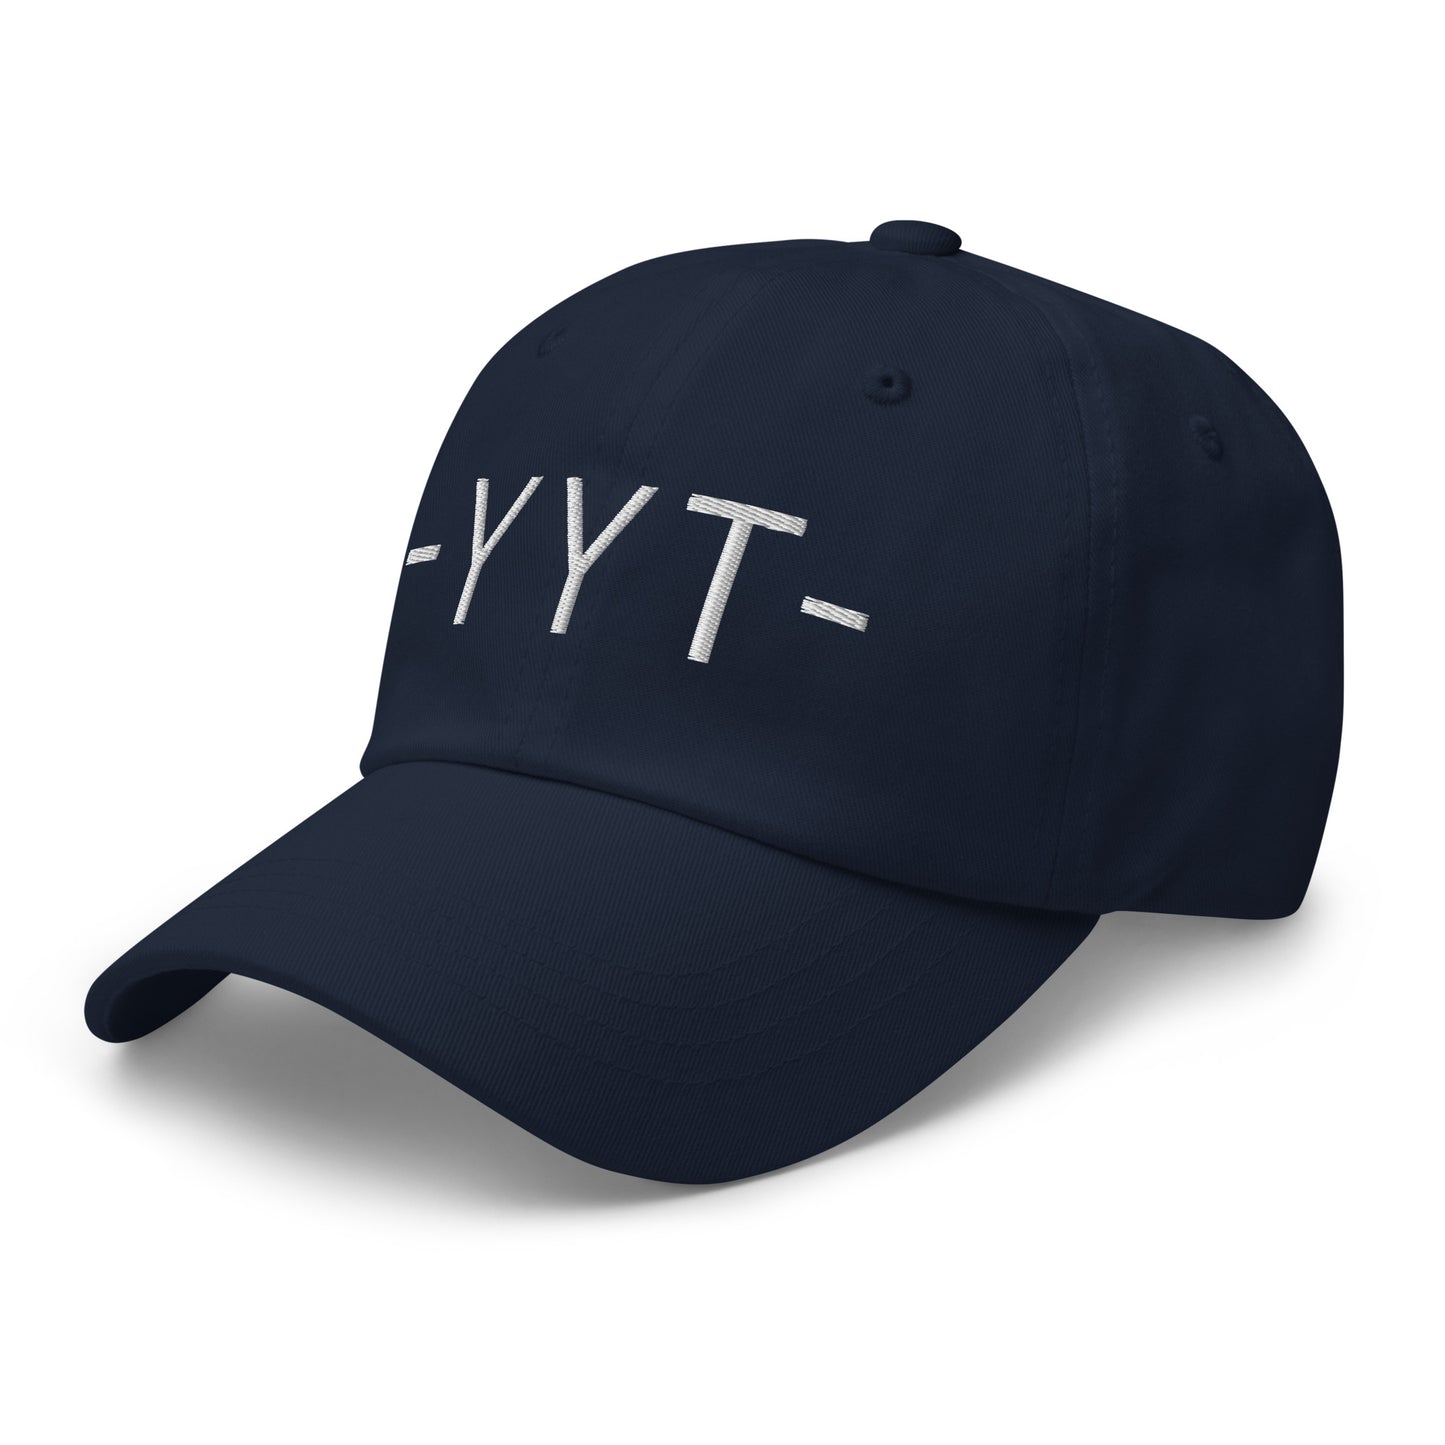 Souvenir Baseball Cap - White • YYT St. John's • YHM Designs - Image 15